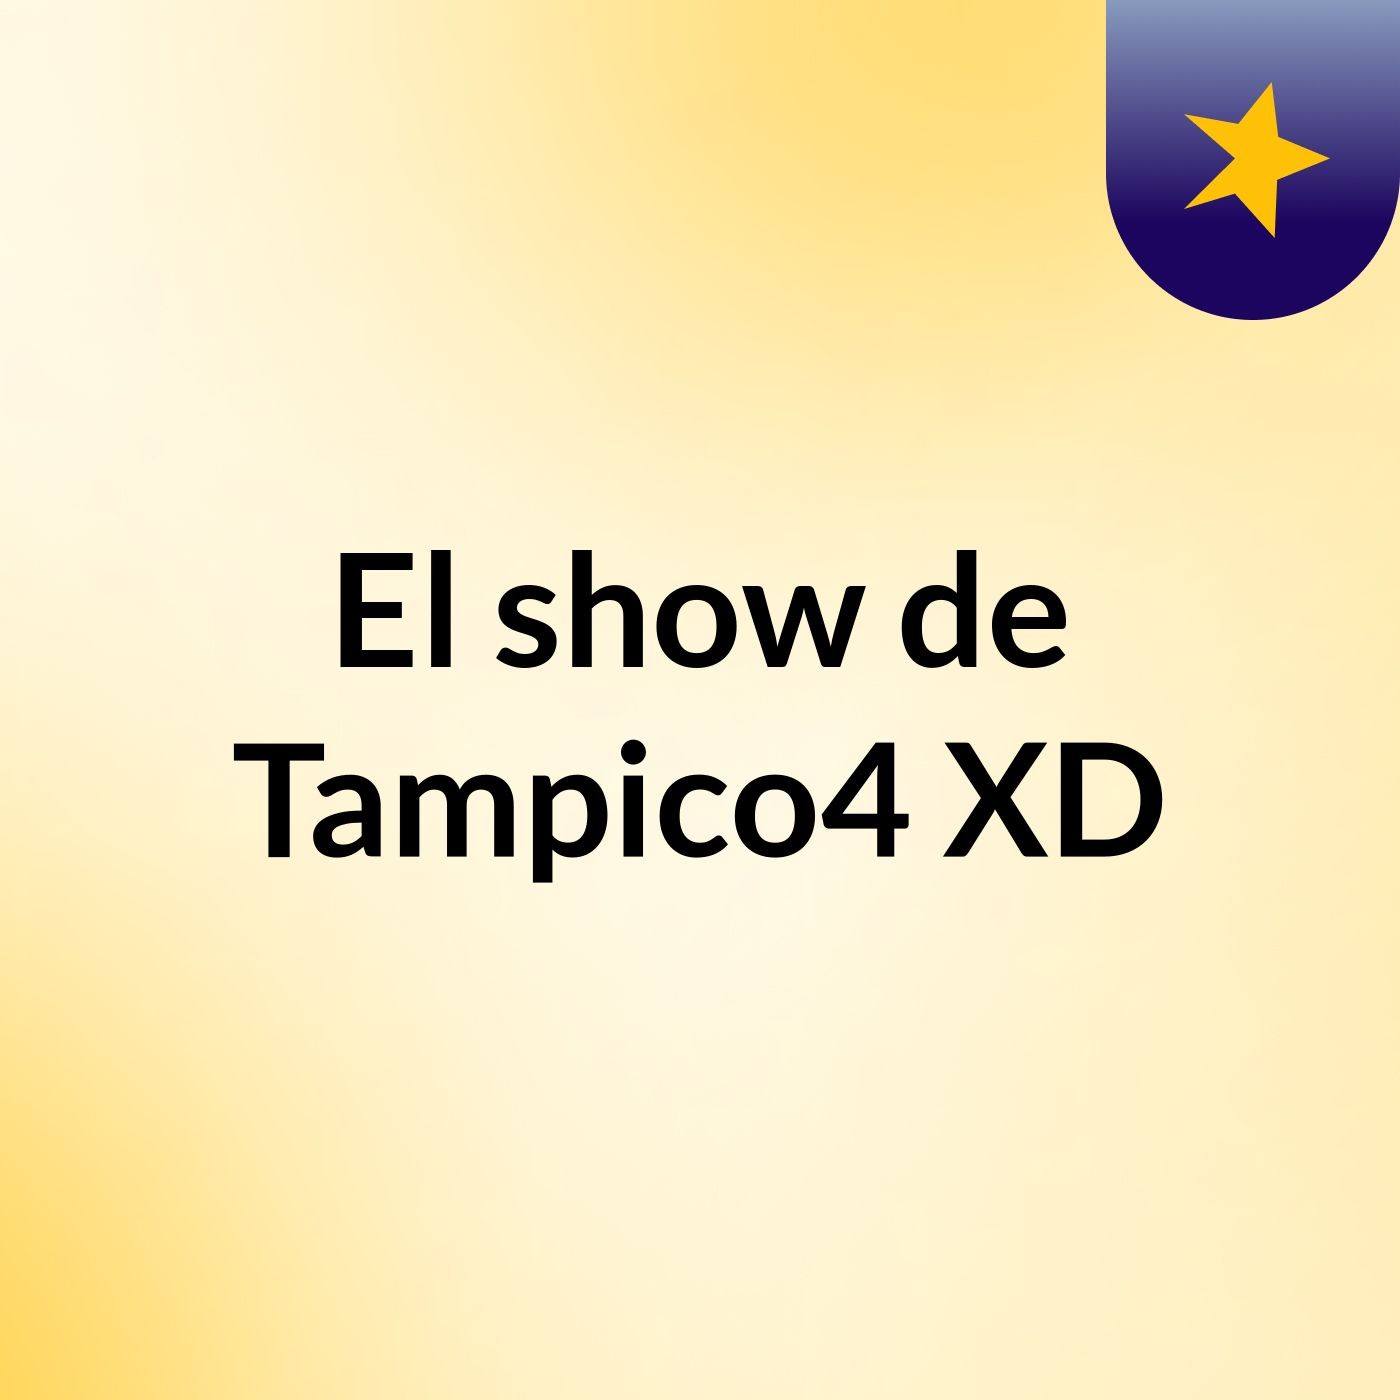 El show de Tampico4 XD